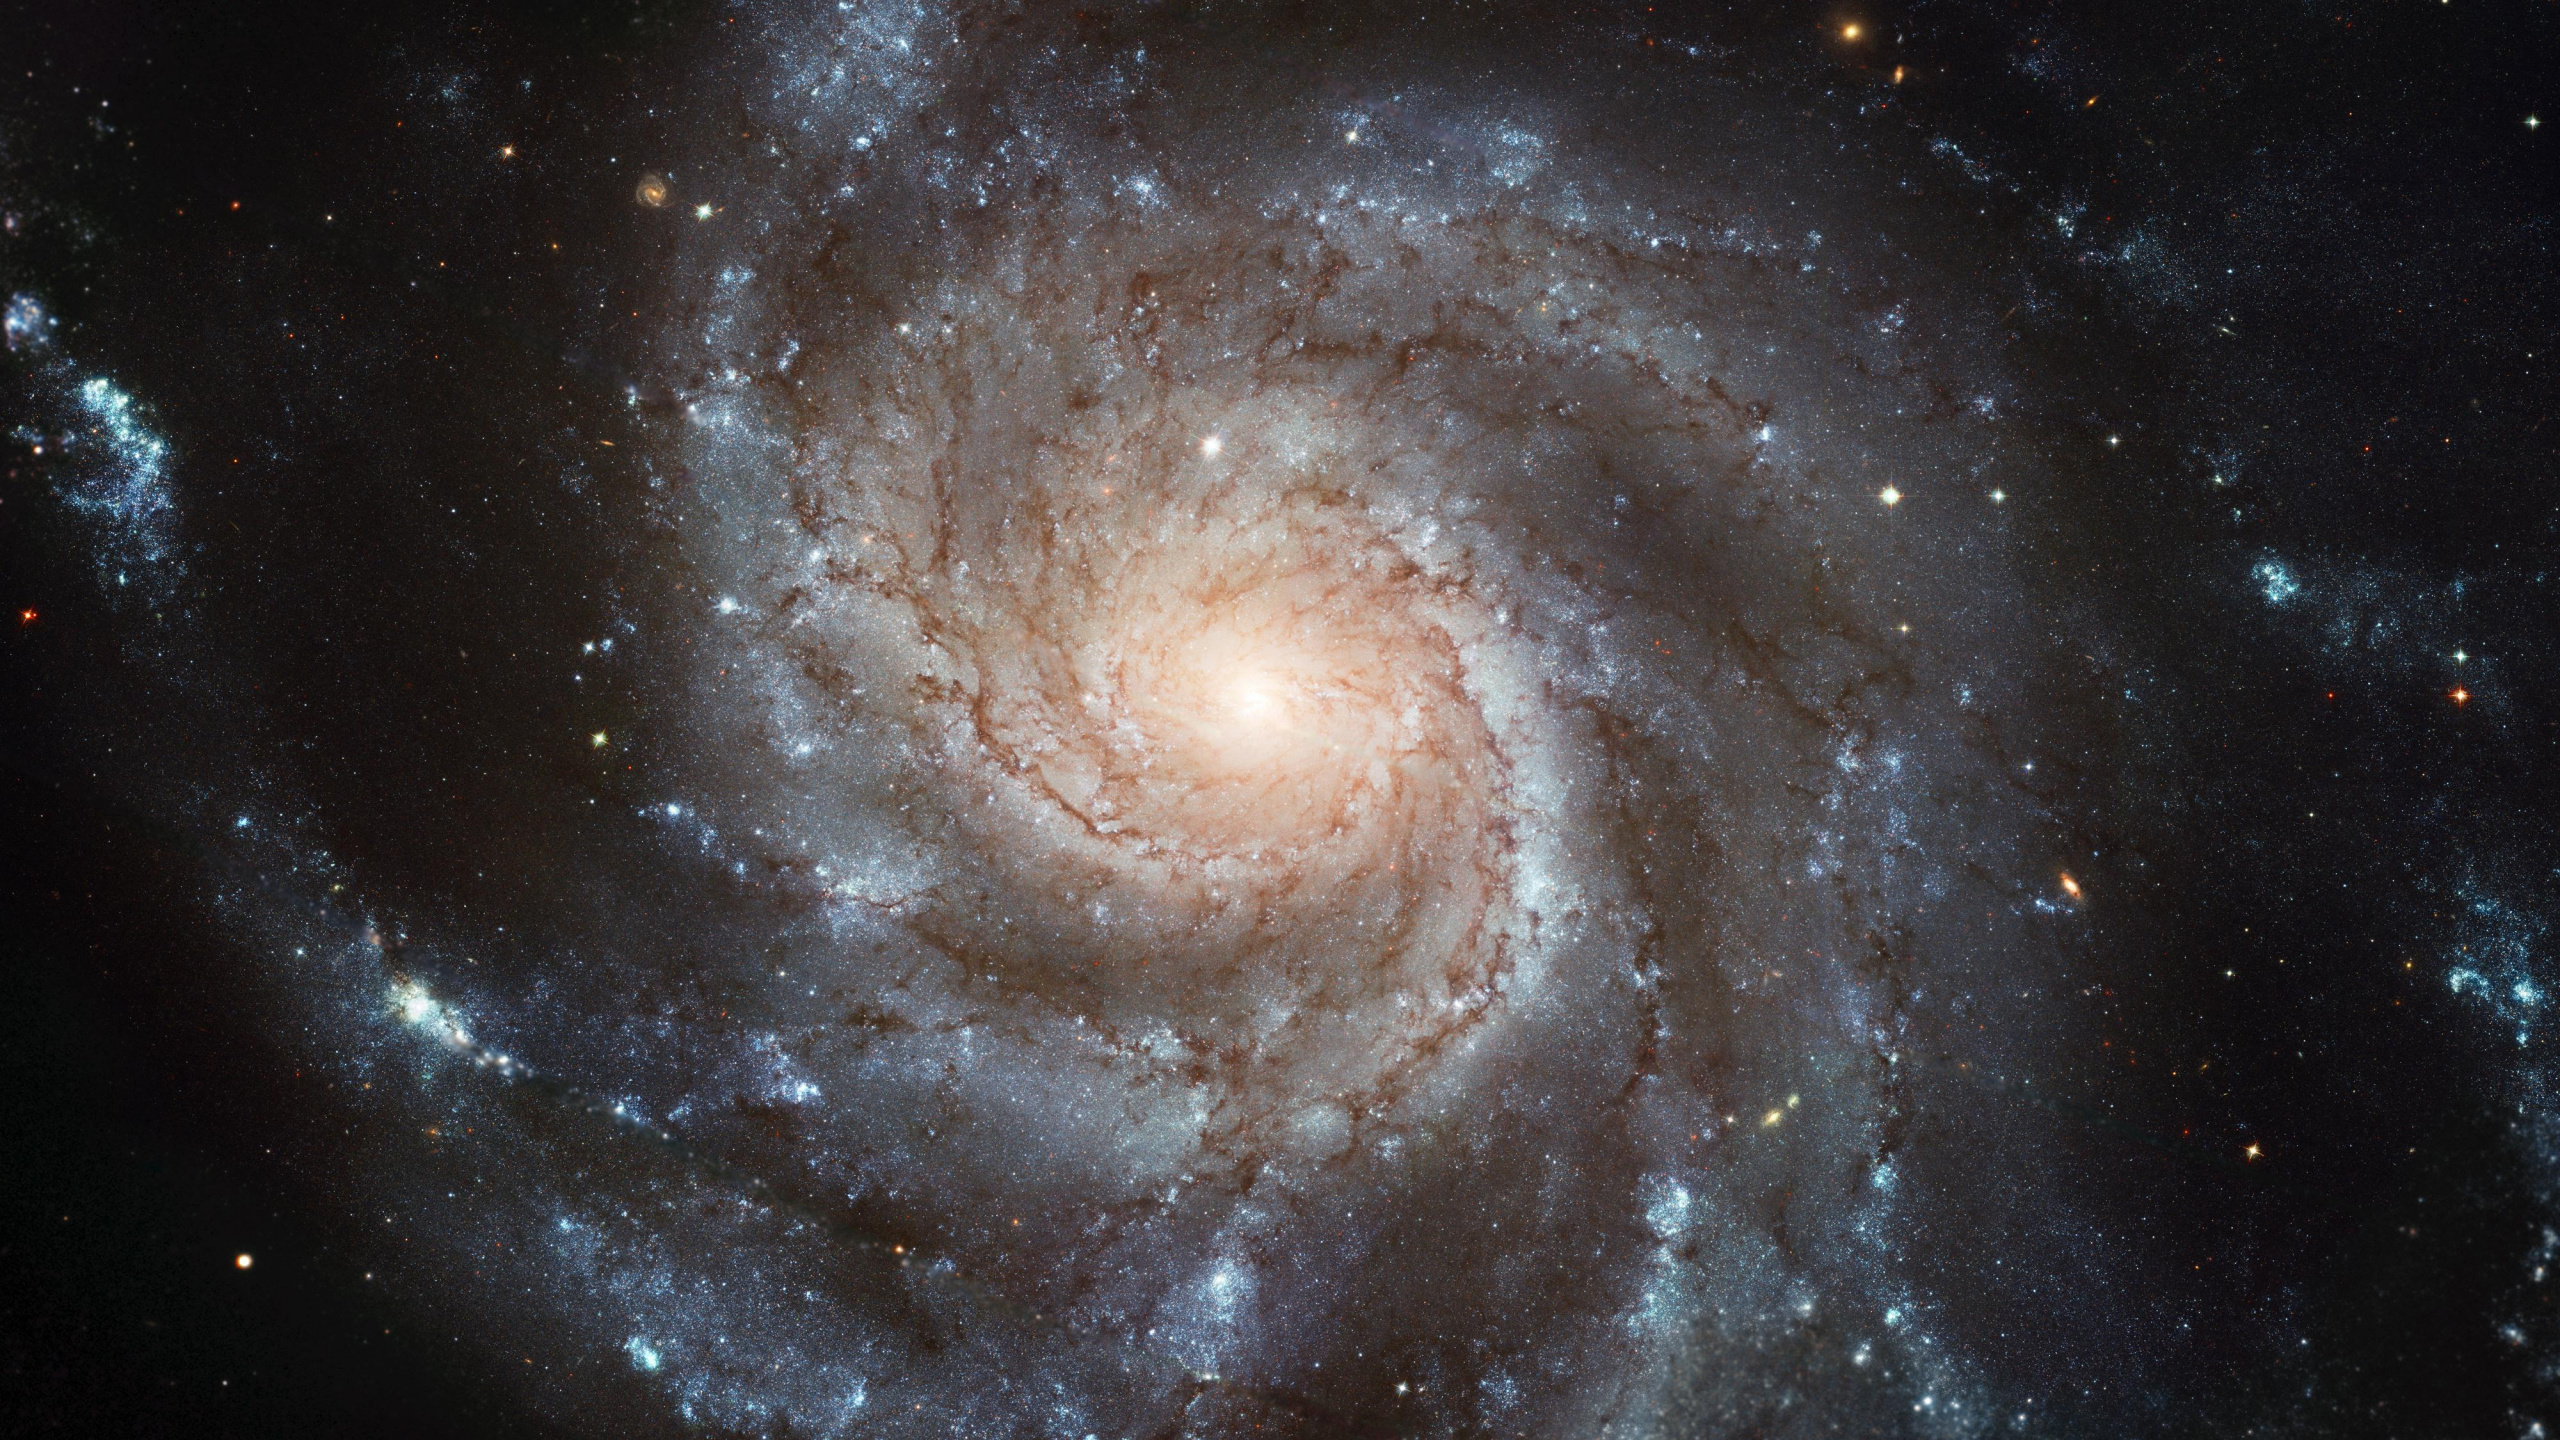 螺旋星系, 哈勃太空望远镜, 天文学, 天文学对象, 宇宙 壁纸 2560x1440 允许